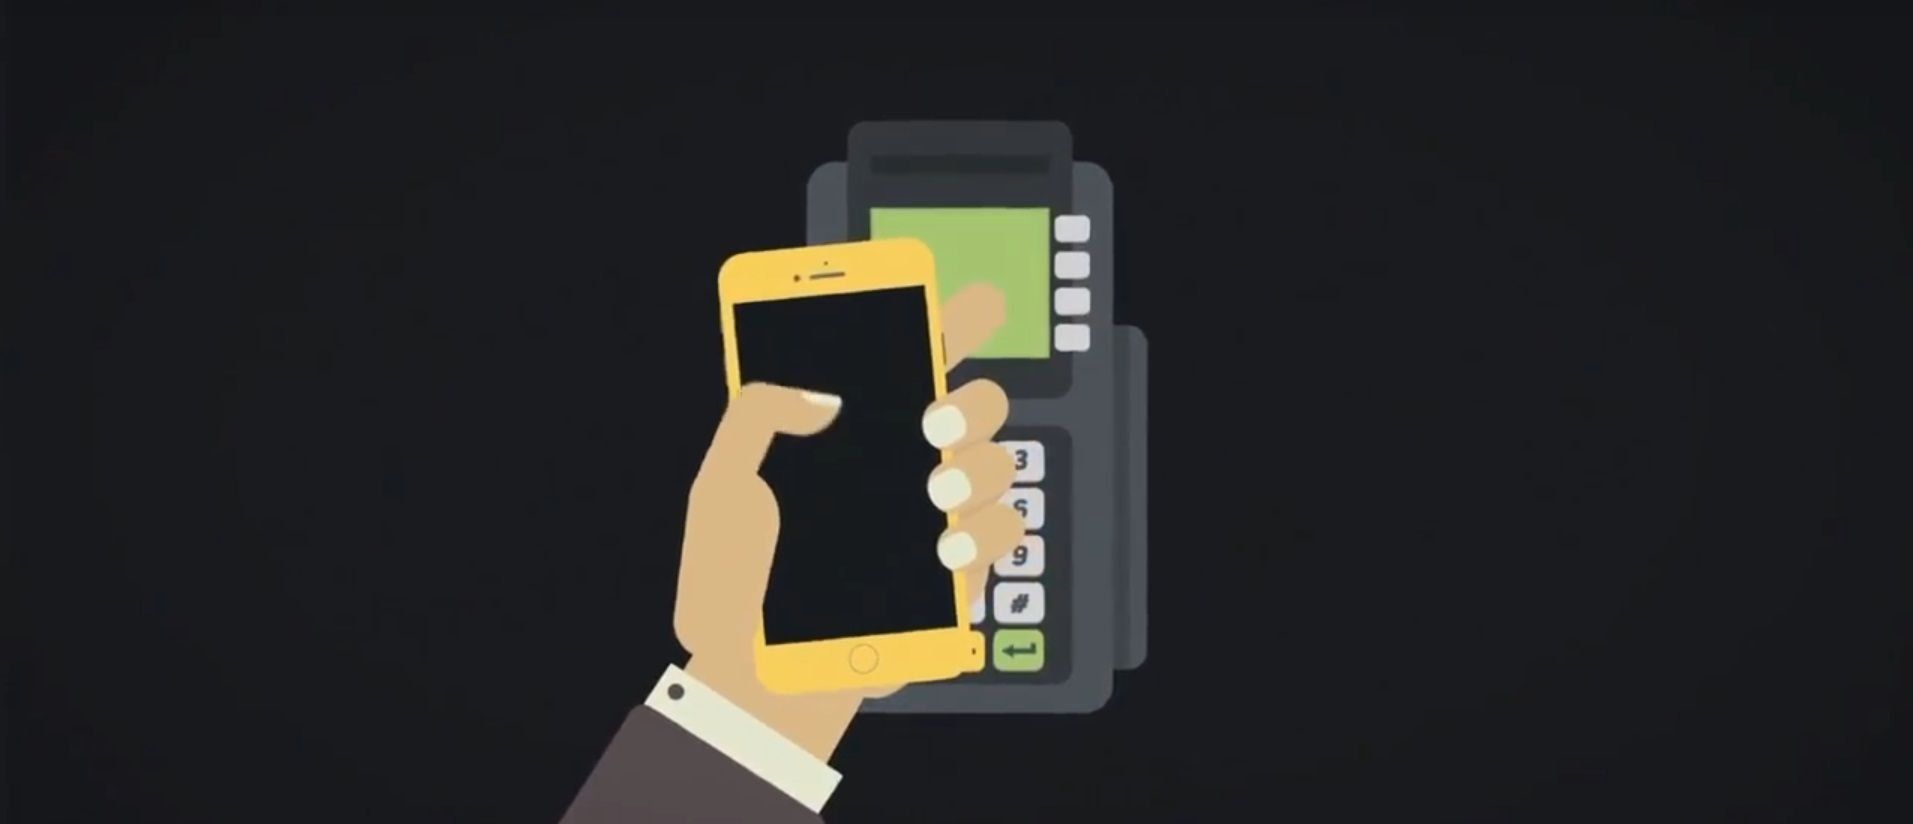 Er NFC-betaling sikker, og hvordan konfigurerer jeg den?